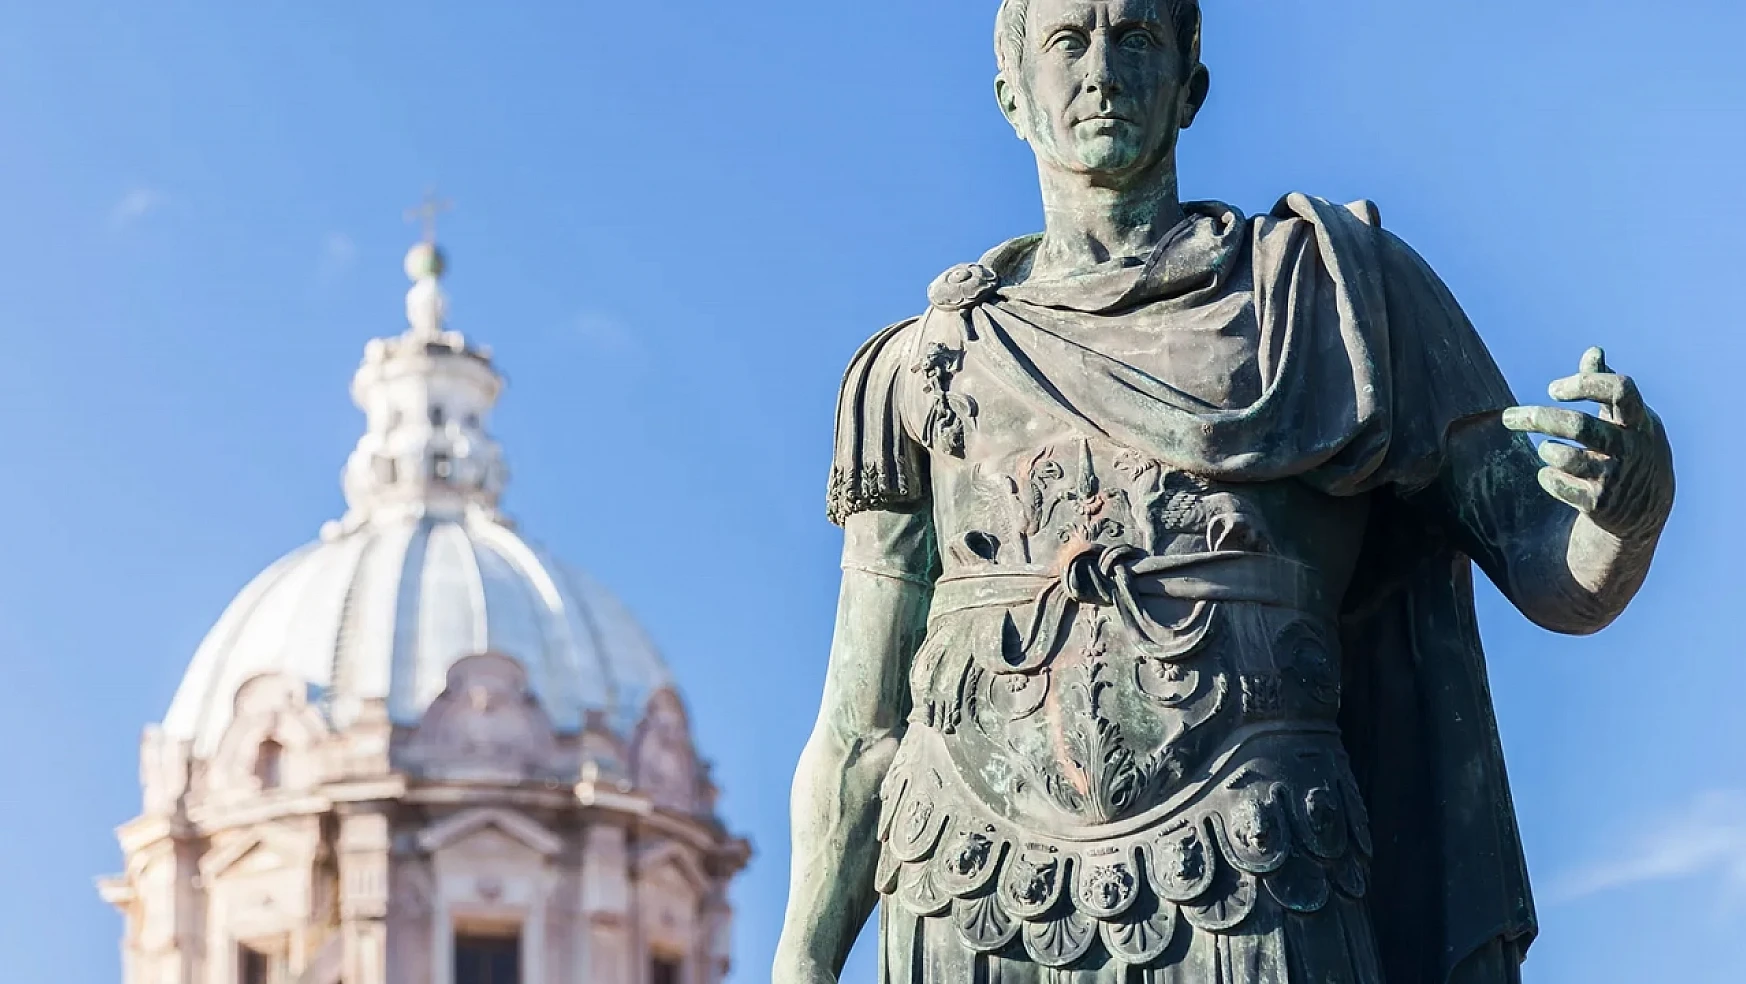 Julius Caesar'ın mirası: Antik Roma'nın efsanevi lideri